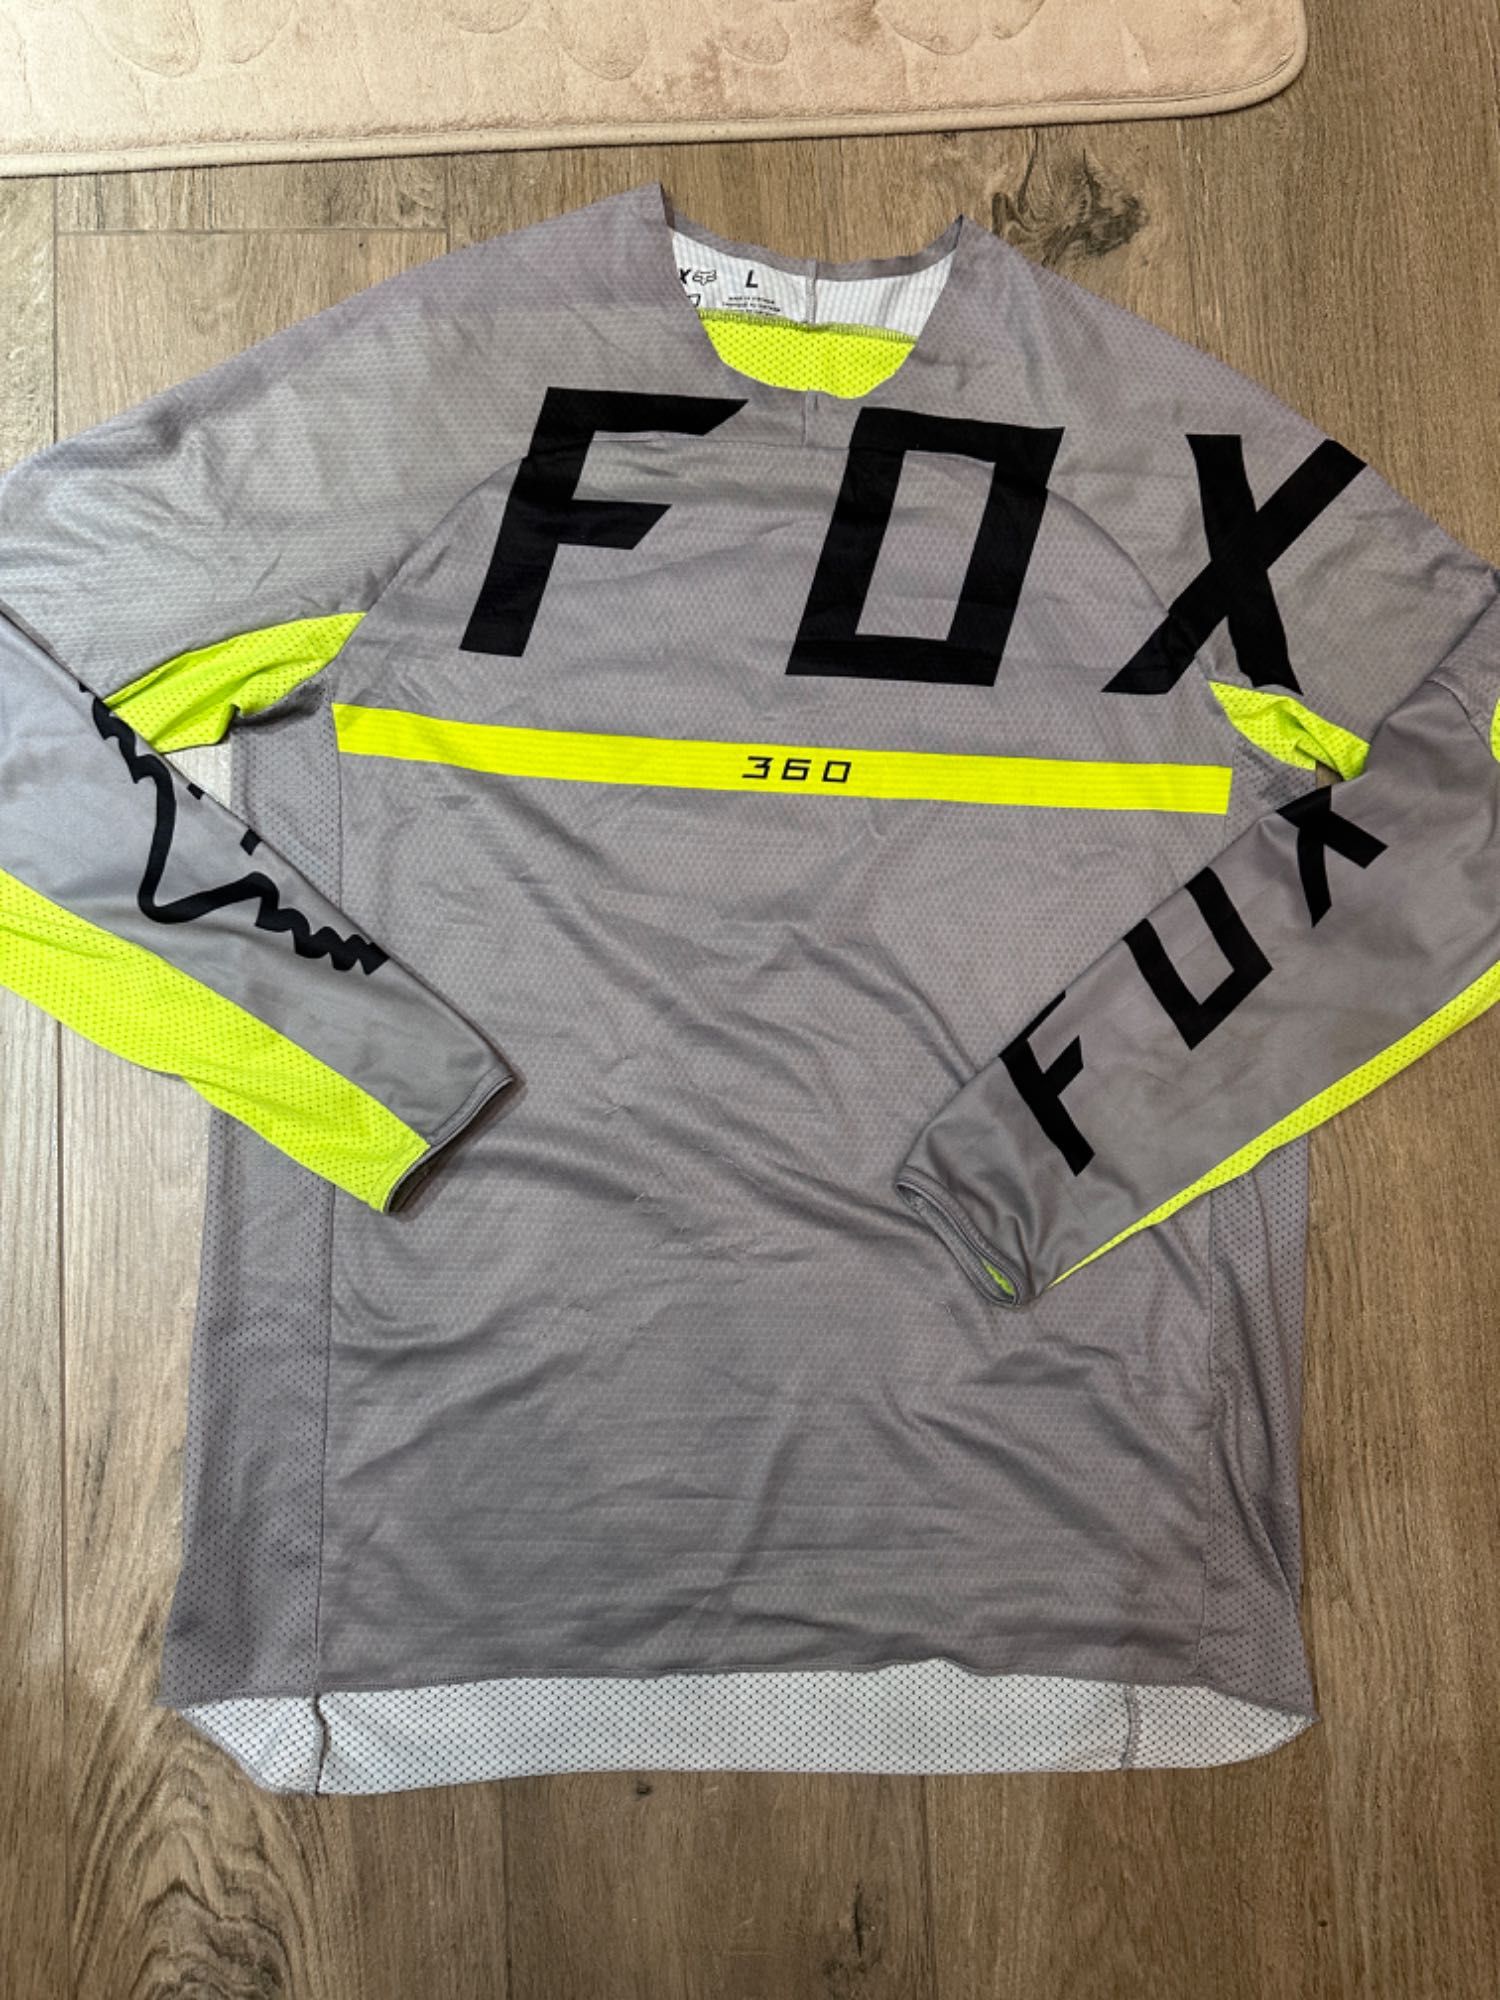 bluzka Fox + rękawice na crossa